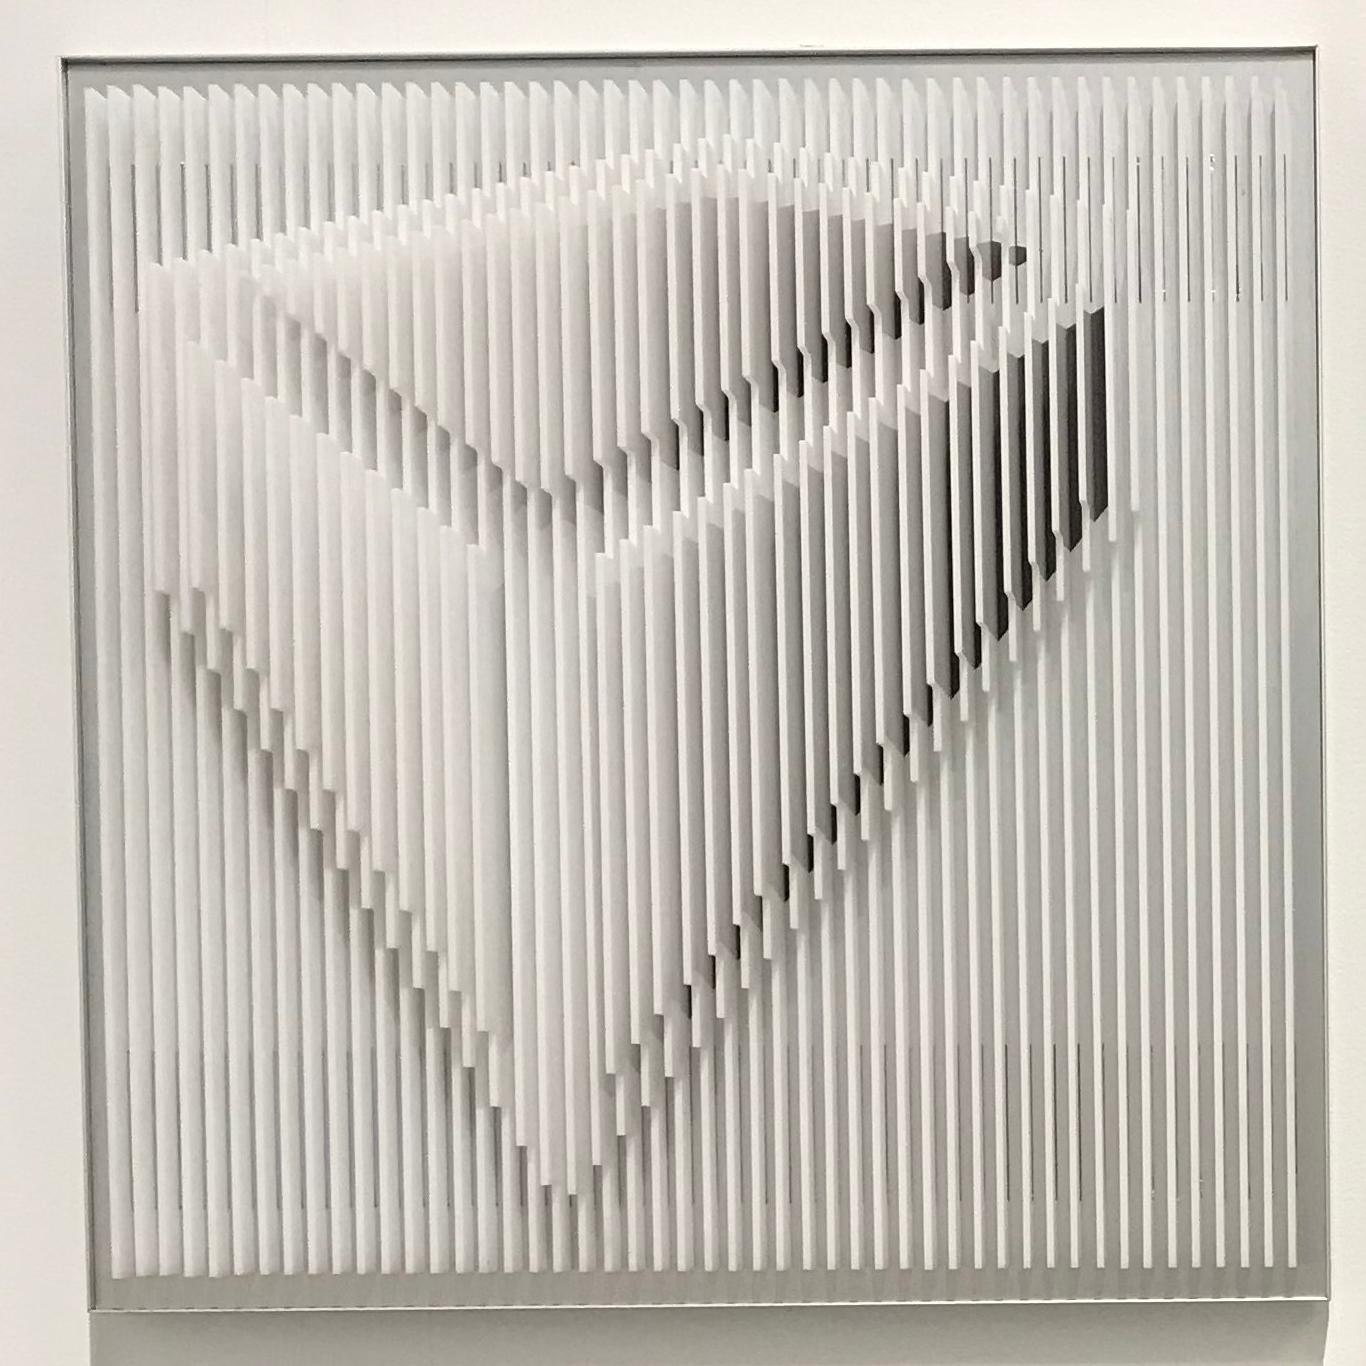 Perspektivenstudie aus der Zeit  - Geometrische abstrakte kinetische Kunst von J. Margulis (Beige), Abstract Sculpture, von Jose Margulis